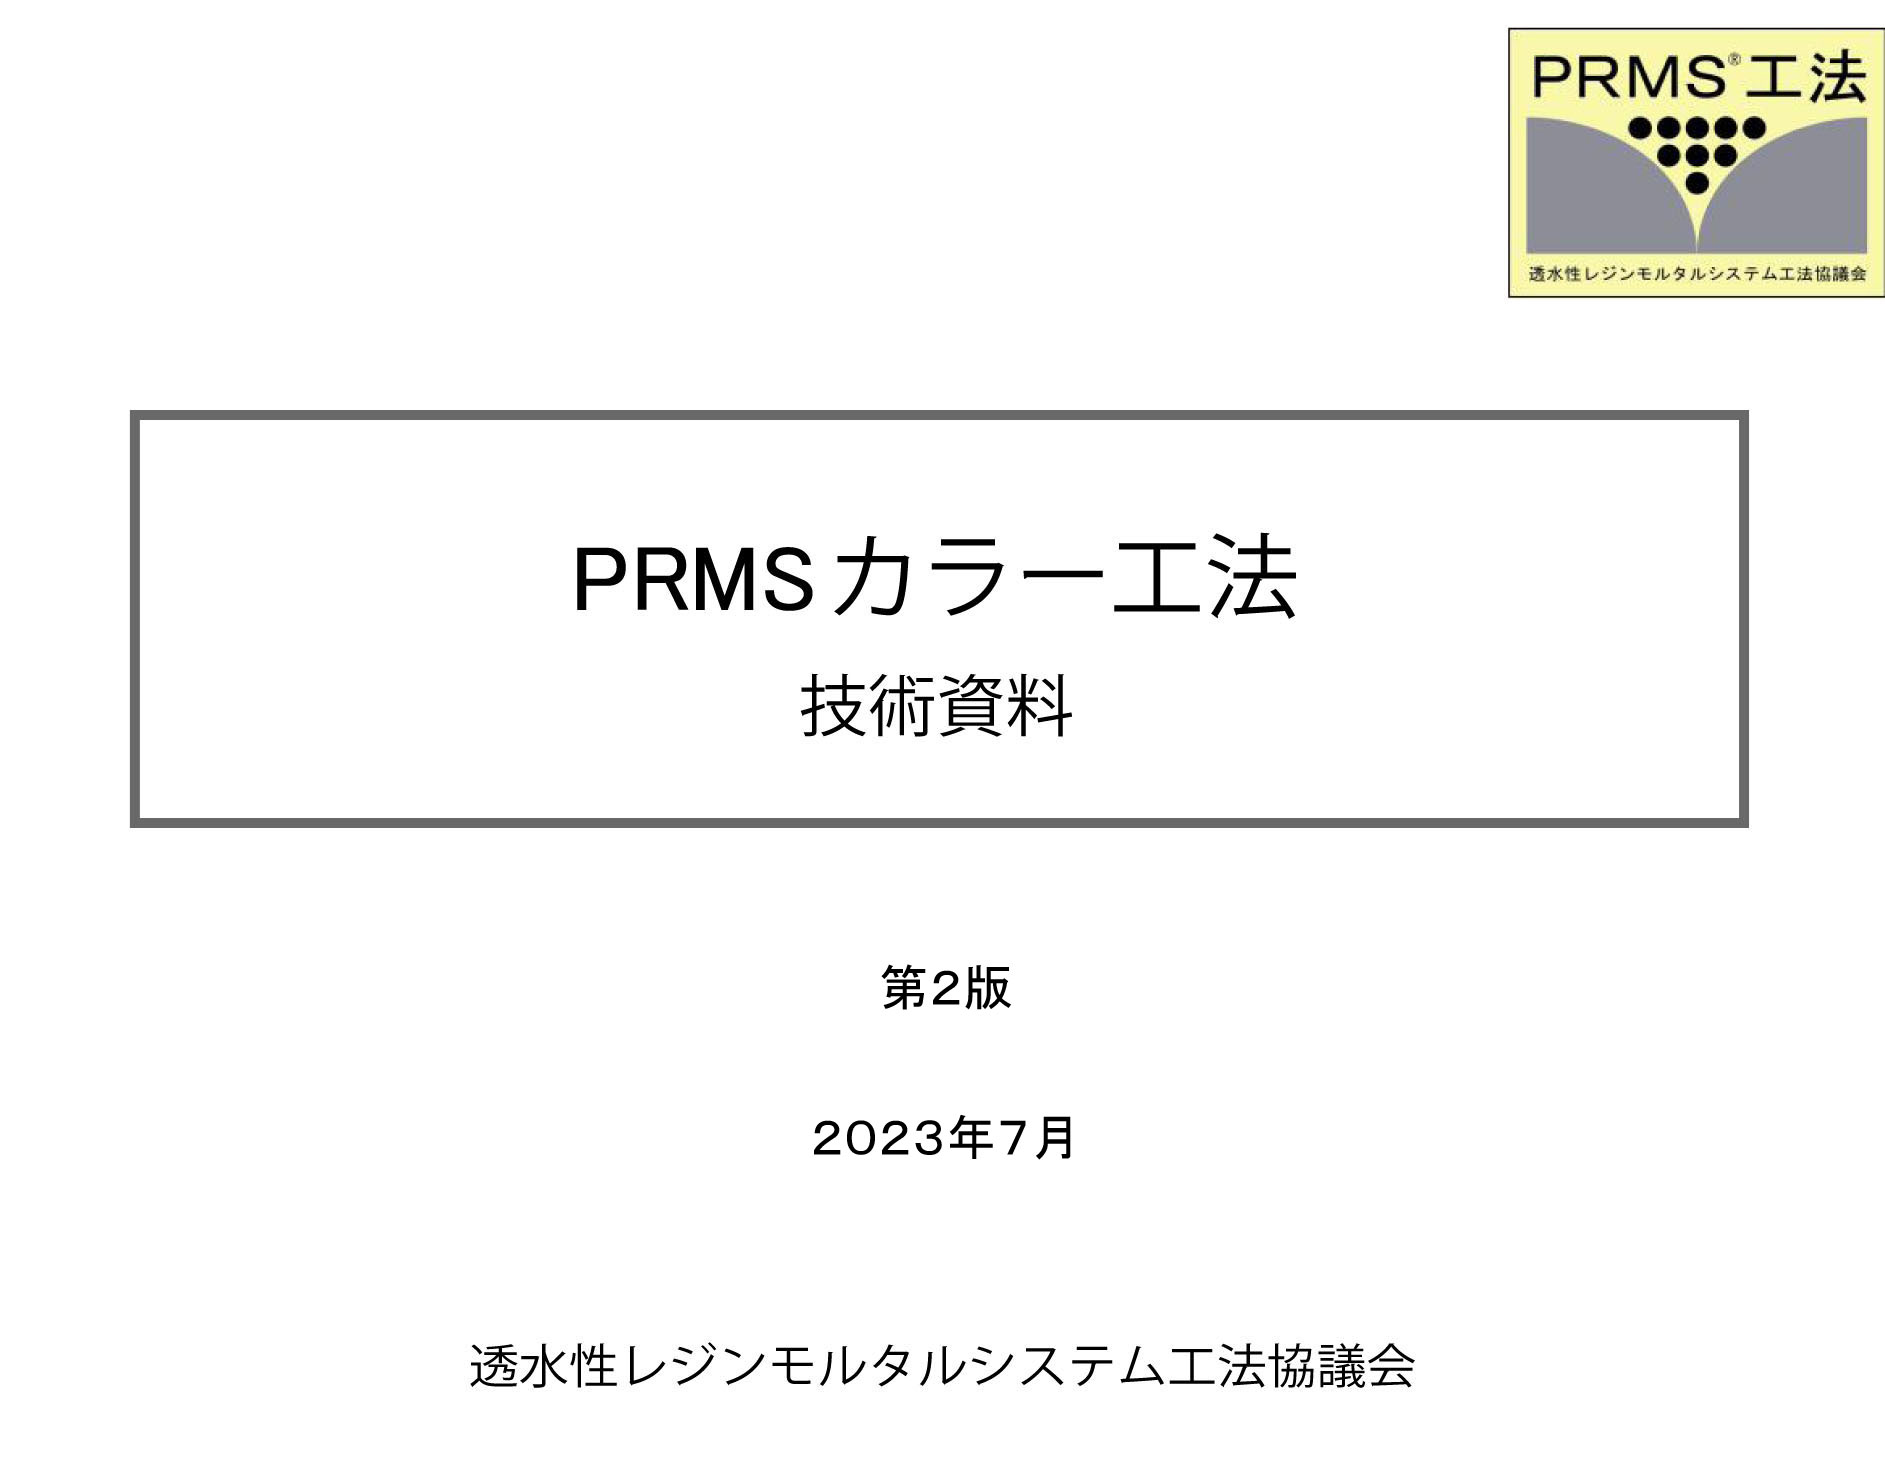 PRMS®カラー工法